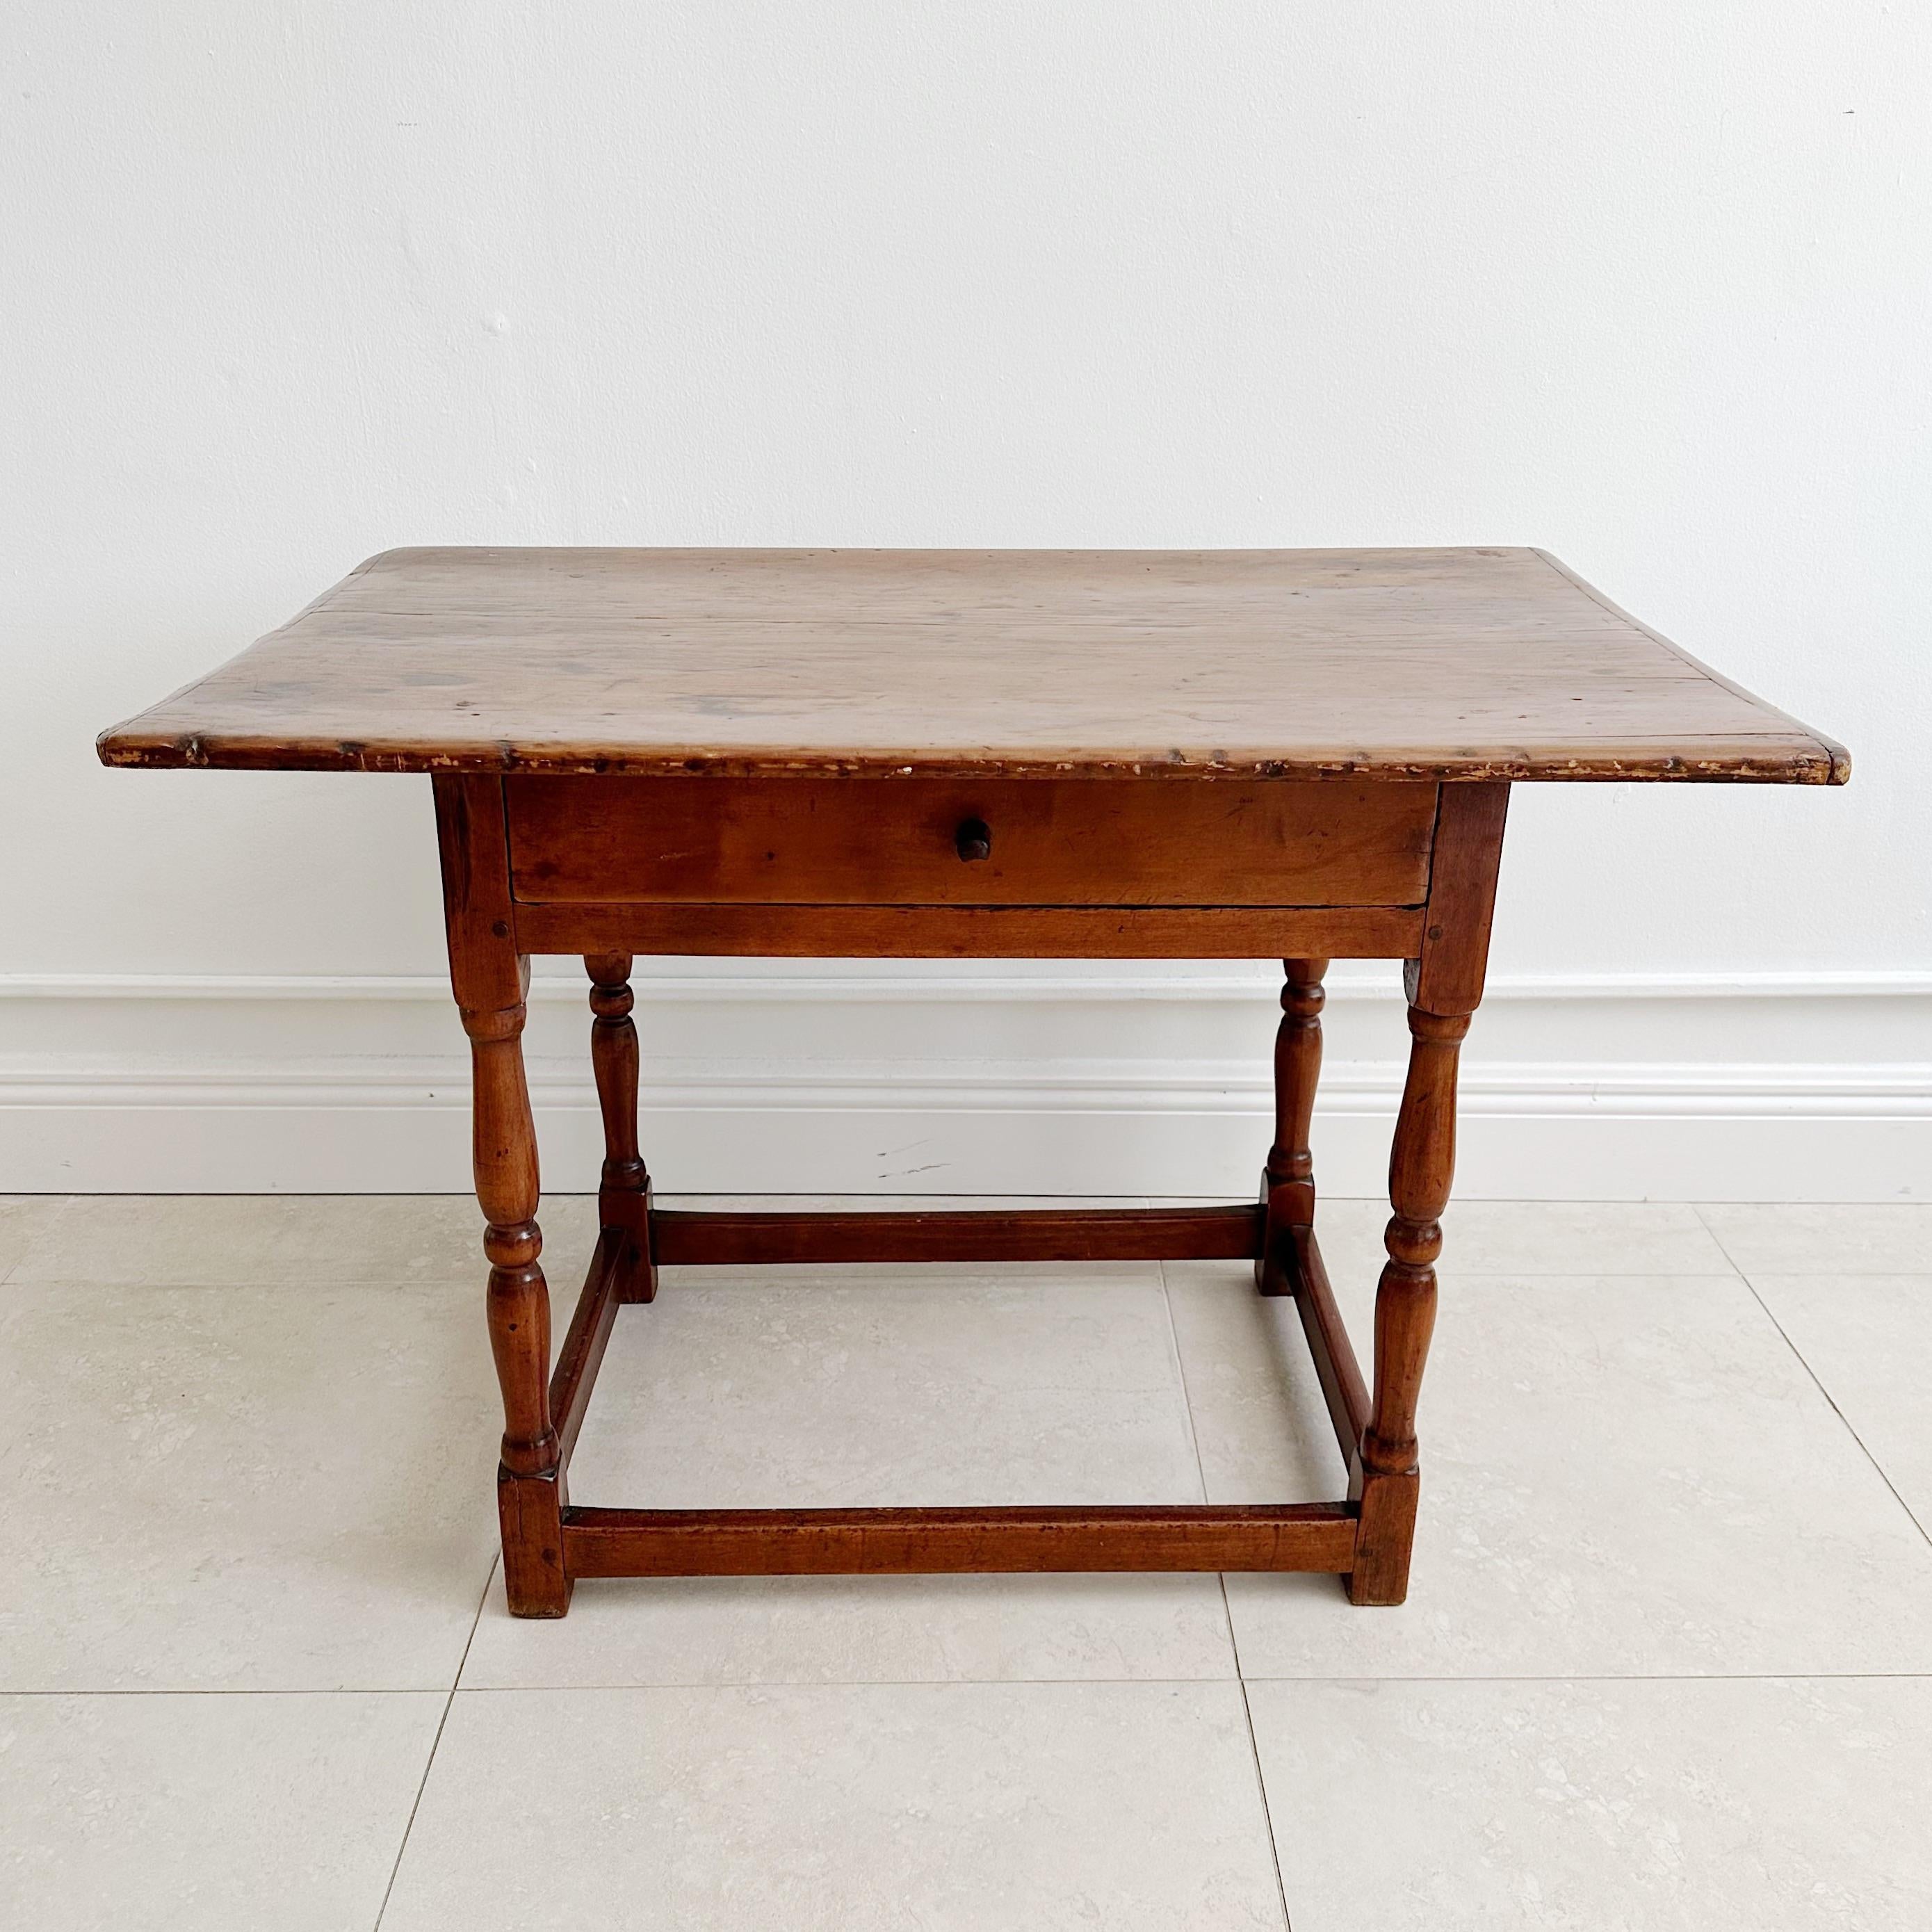 Exquise table de taverne de la Nouvelle-Angleterre du 18e siècle.  fabriqué à partir d'une seule pièce de  Noyer d'origine. Cette pièce remarquable présente un plateau en surplomb avec des extrémités authentiques en planche à pain, une base